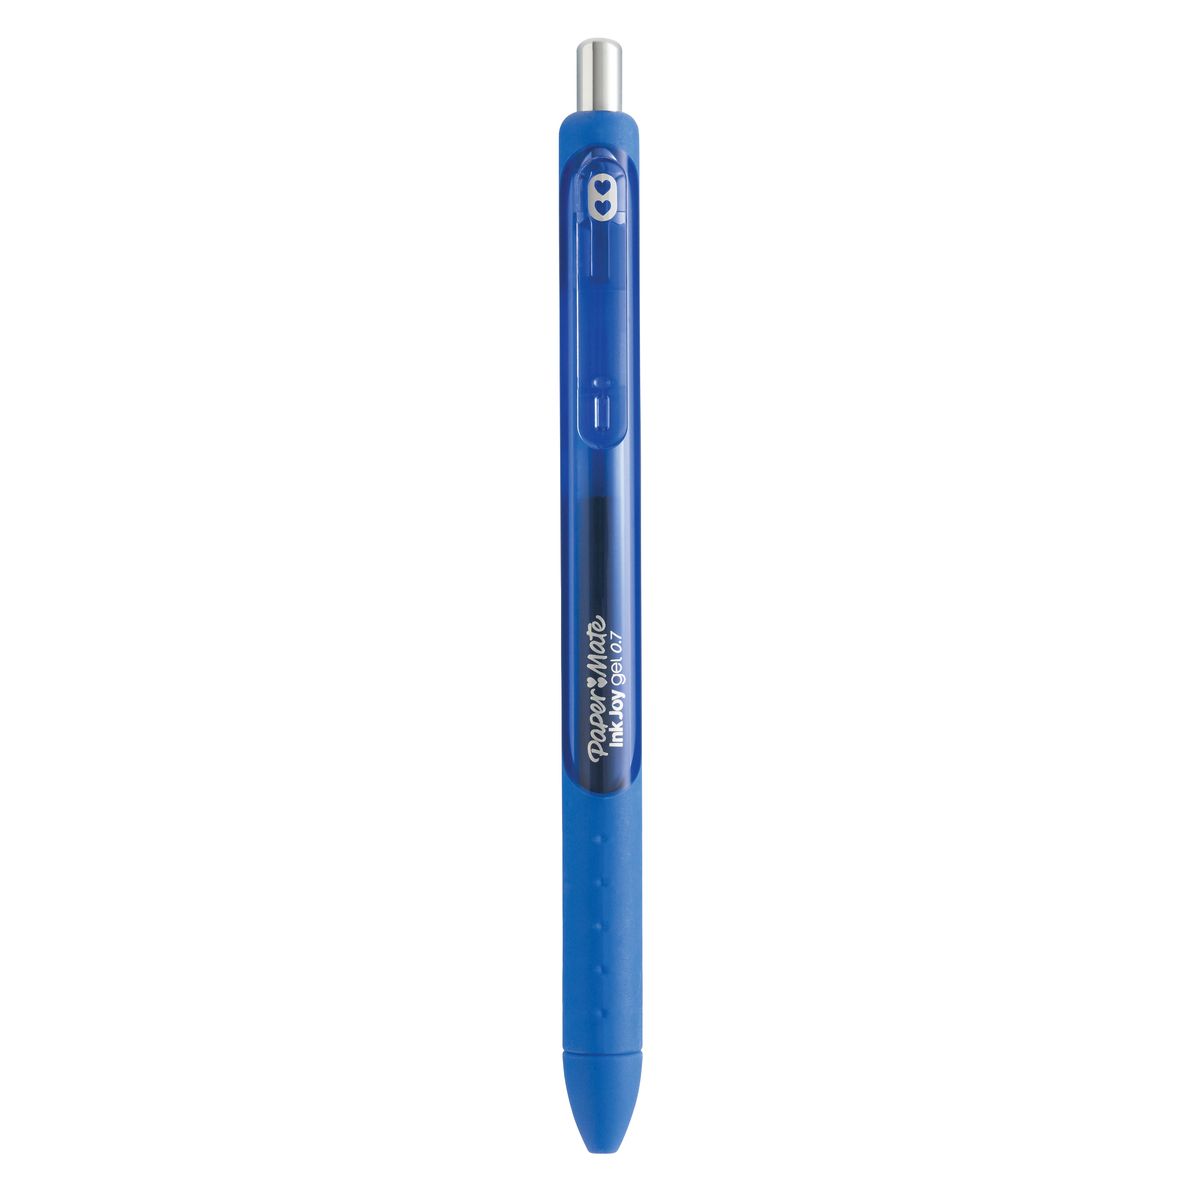 Długopis żelowy Paper Mate INK JOY niebieski Mmm (1957054)